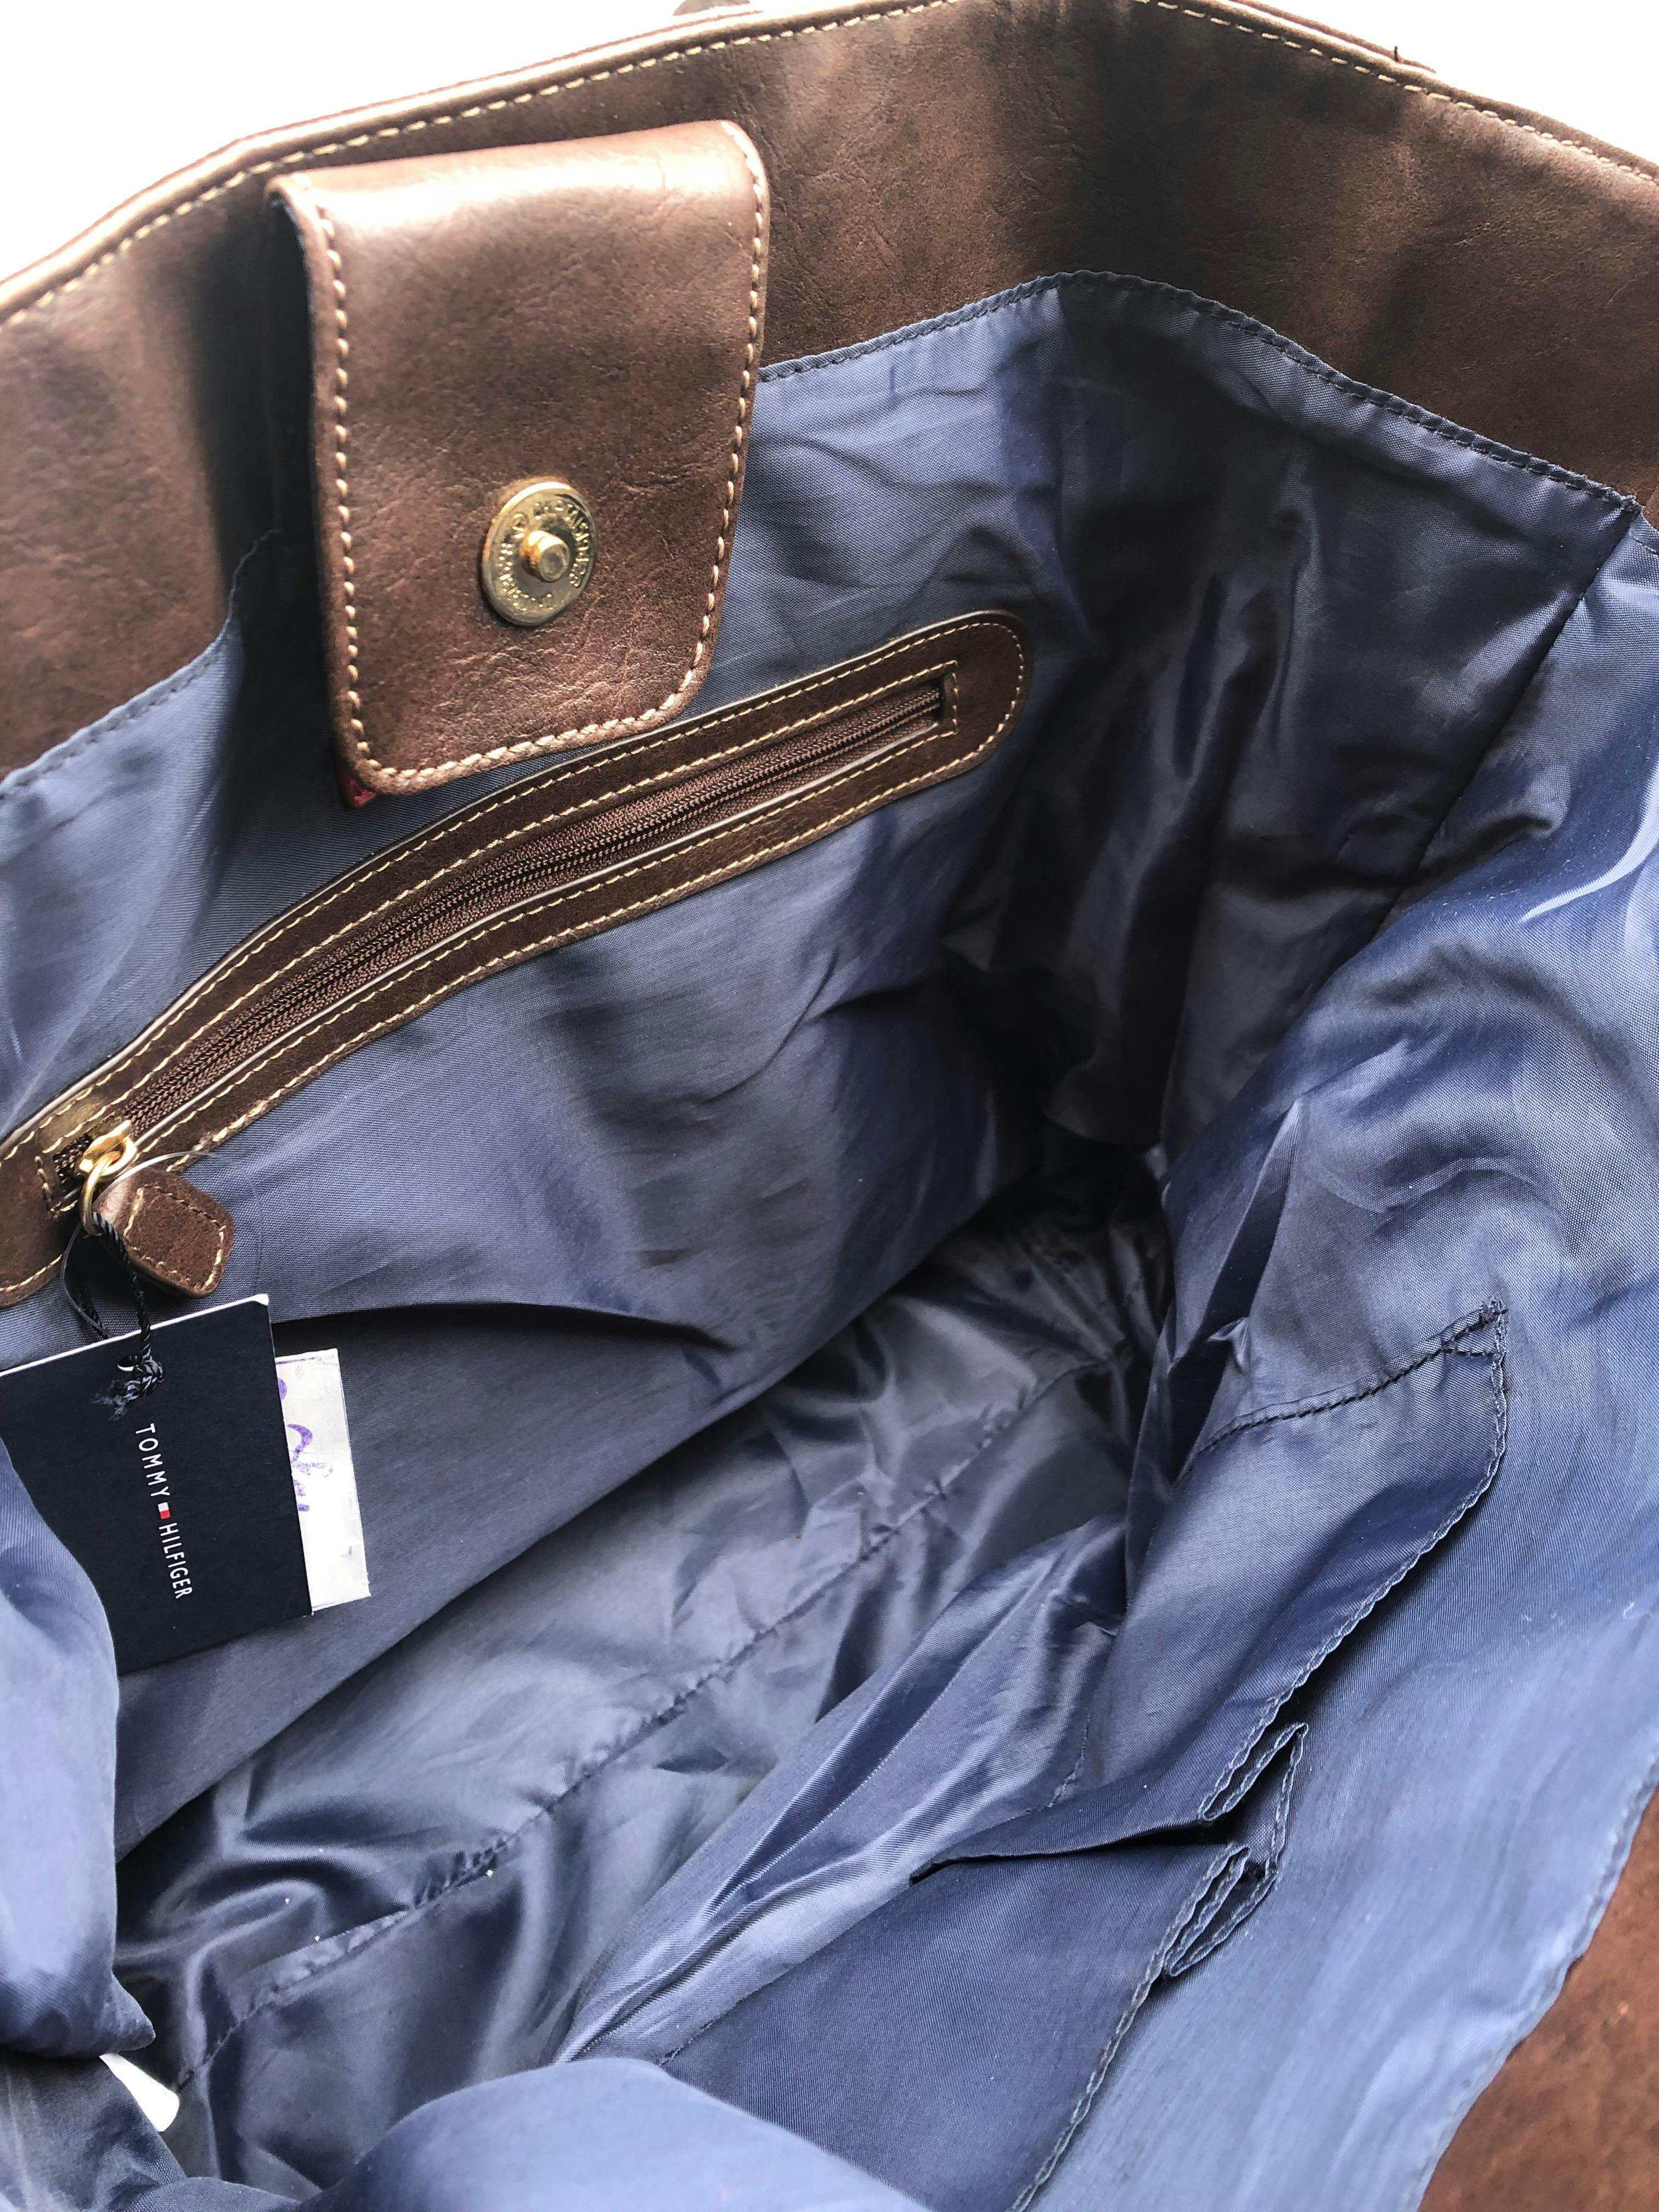 Cartera Tommy Hilfiger monograma azul y rojo con detalles tipo cuero marrón, forro interno con un compartimento con zipper, cierra co broche. Medidas 34x33x12cm.  Nueva